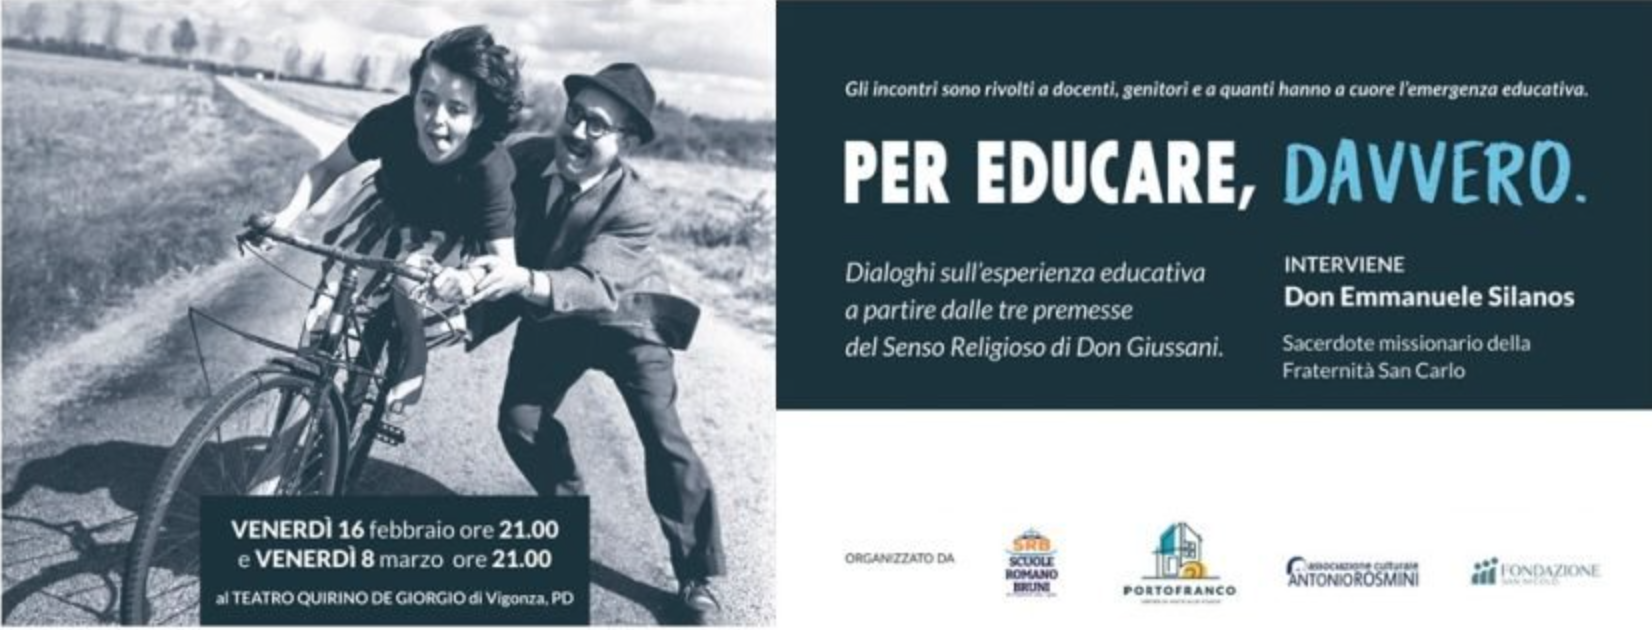 Featured image for “Padova: Per educare davvero. Dialoghi sulle tre premesse del Senso religioso”